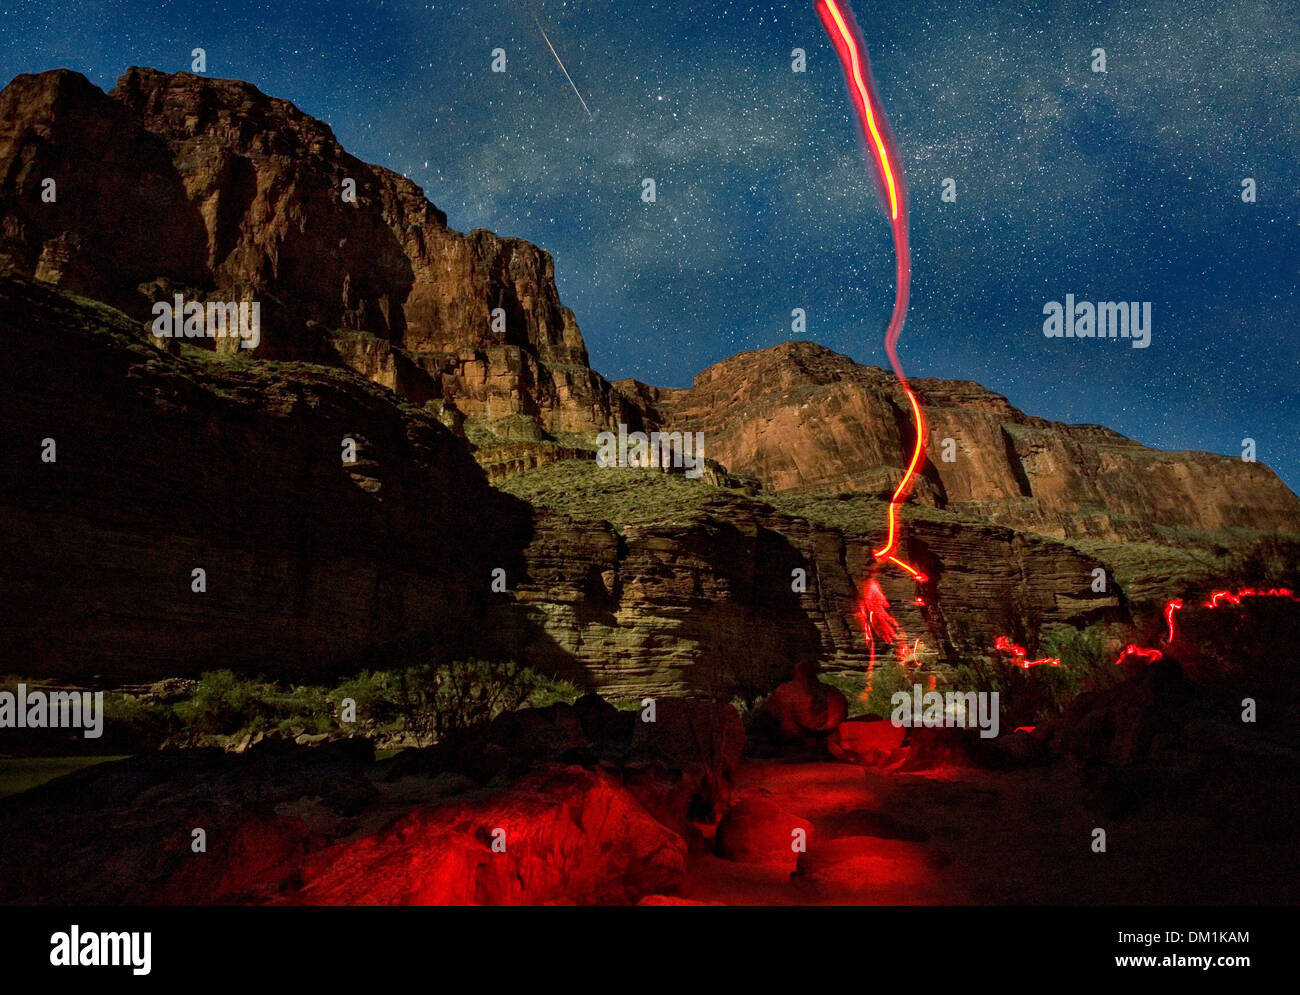 Un faro rojo sale un sendero a través de un lapso de tiempo foto por la noche en el Gran Cañón. La Vía Láctea y de un meteoro son visibles. Foto de stock